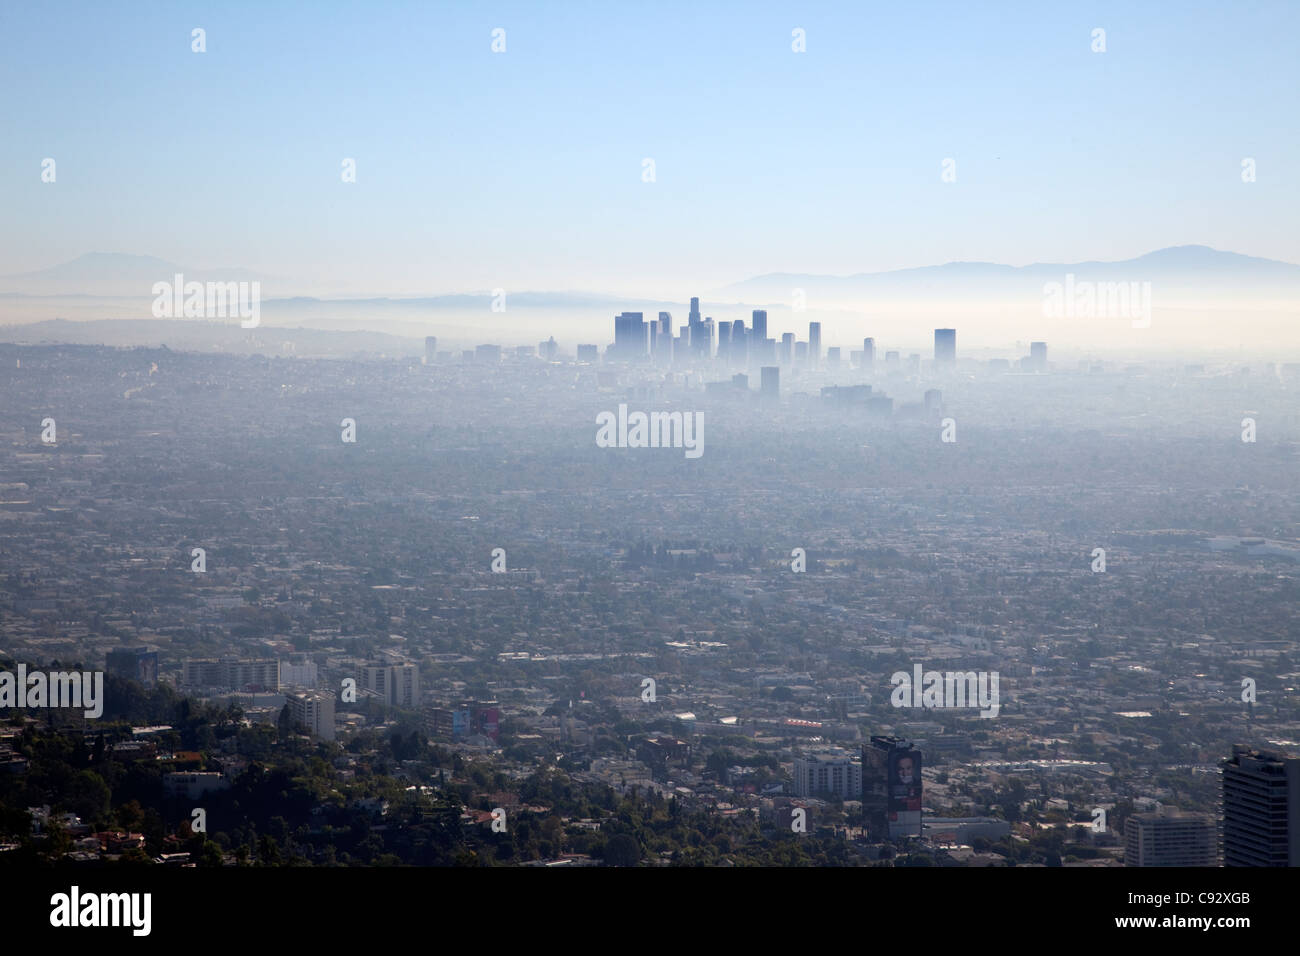 Es ist häufig sehr schlechte Luftqualität über Los Angeles Stadt mit einer Dunst oder Verschmutzung Wolke auf der Fläche. Stockfoto